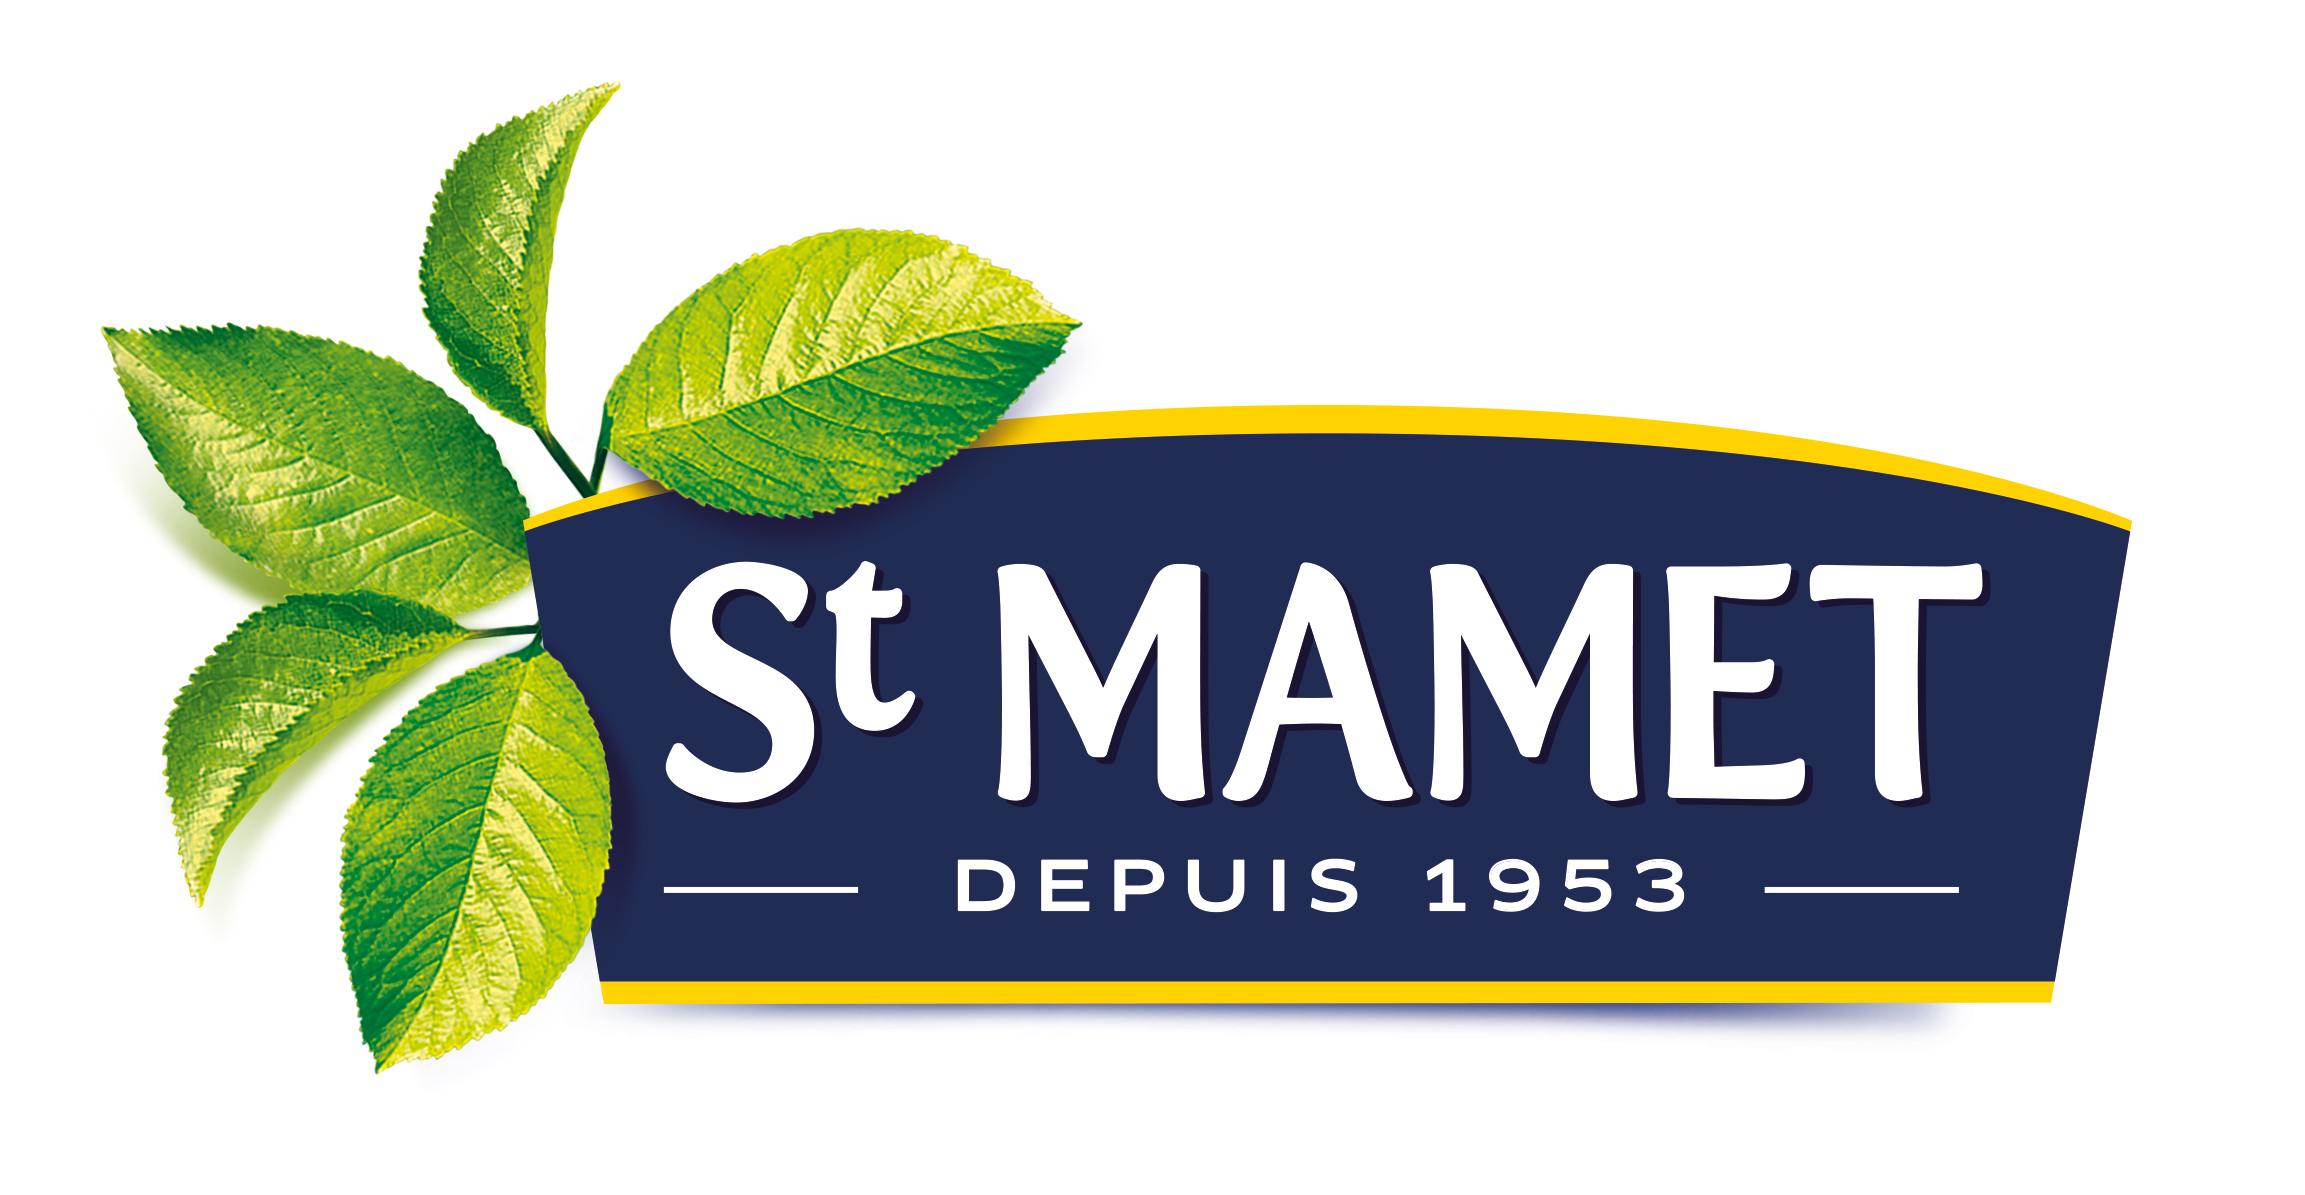 St. Mamet